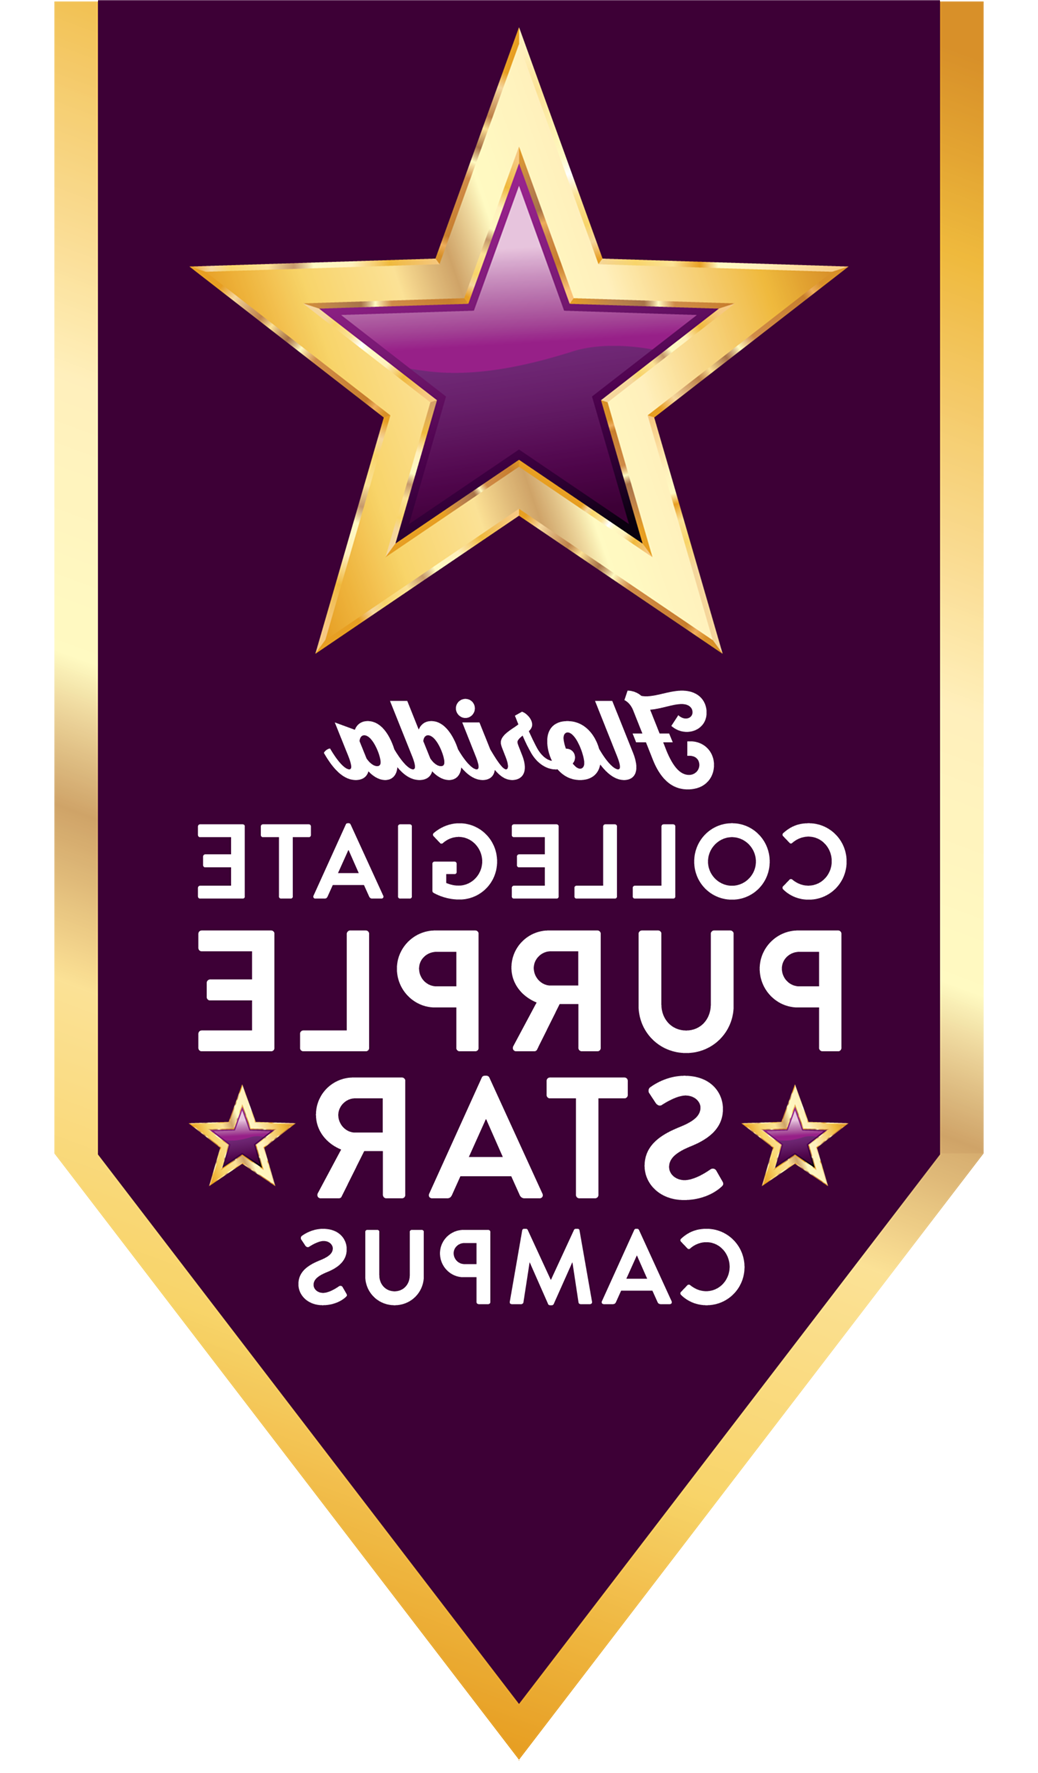 FL Collegiate Purple Star Campus logo